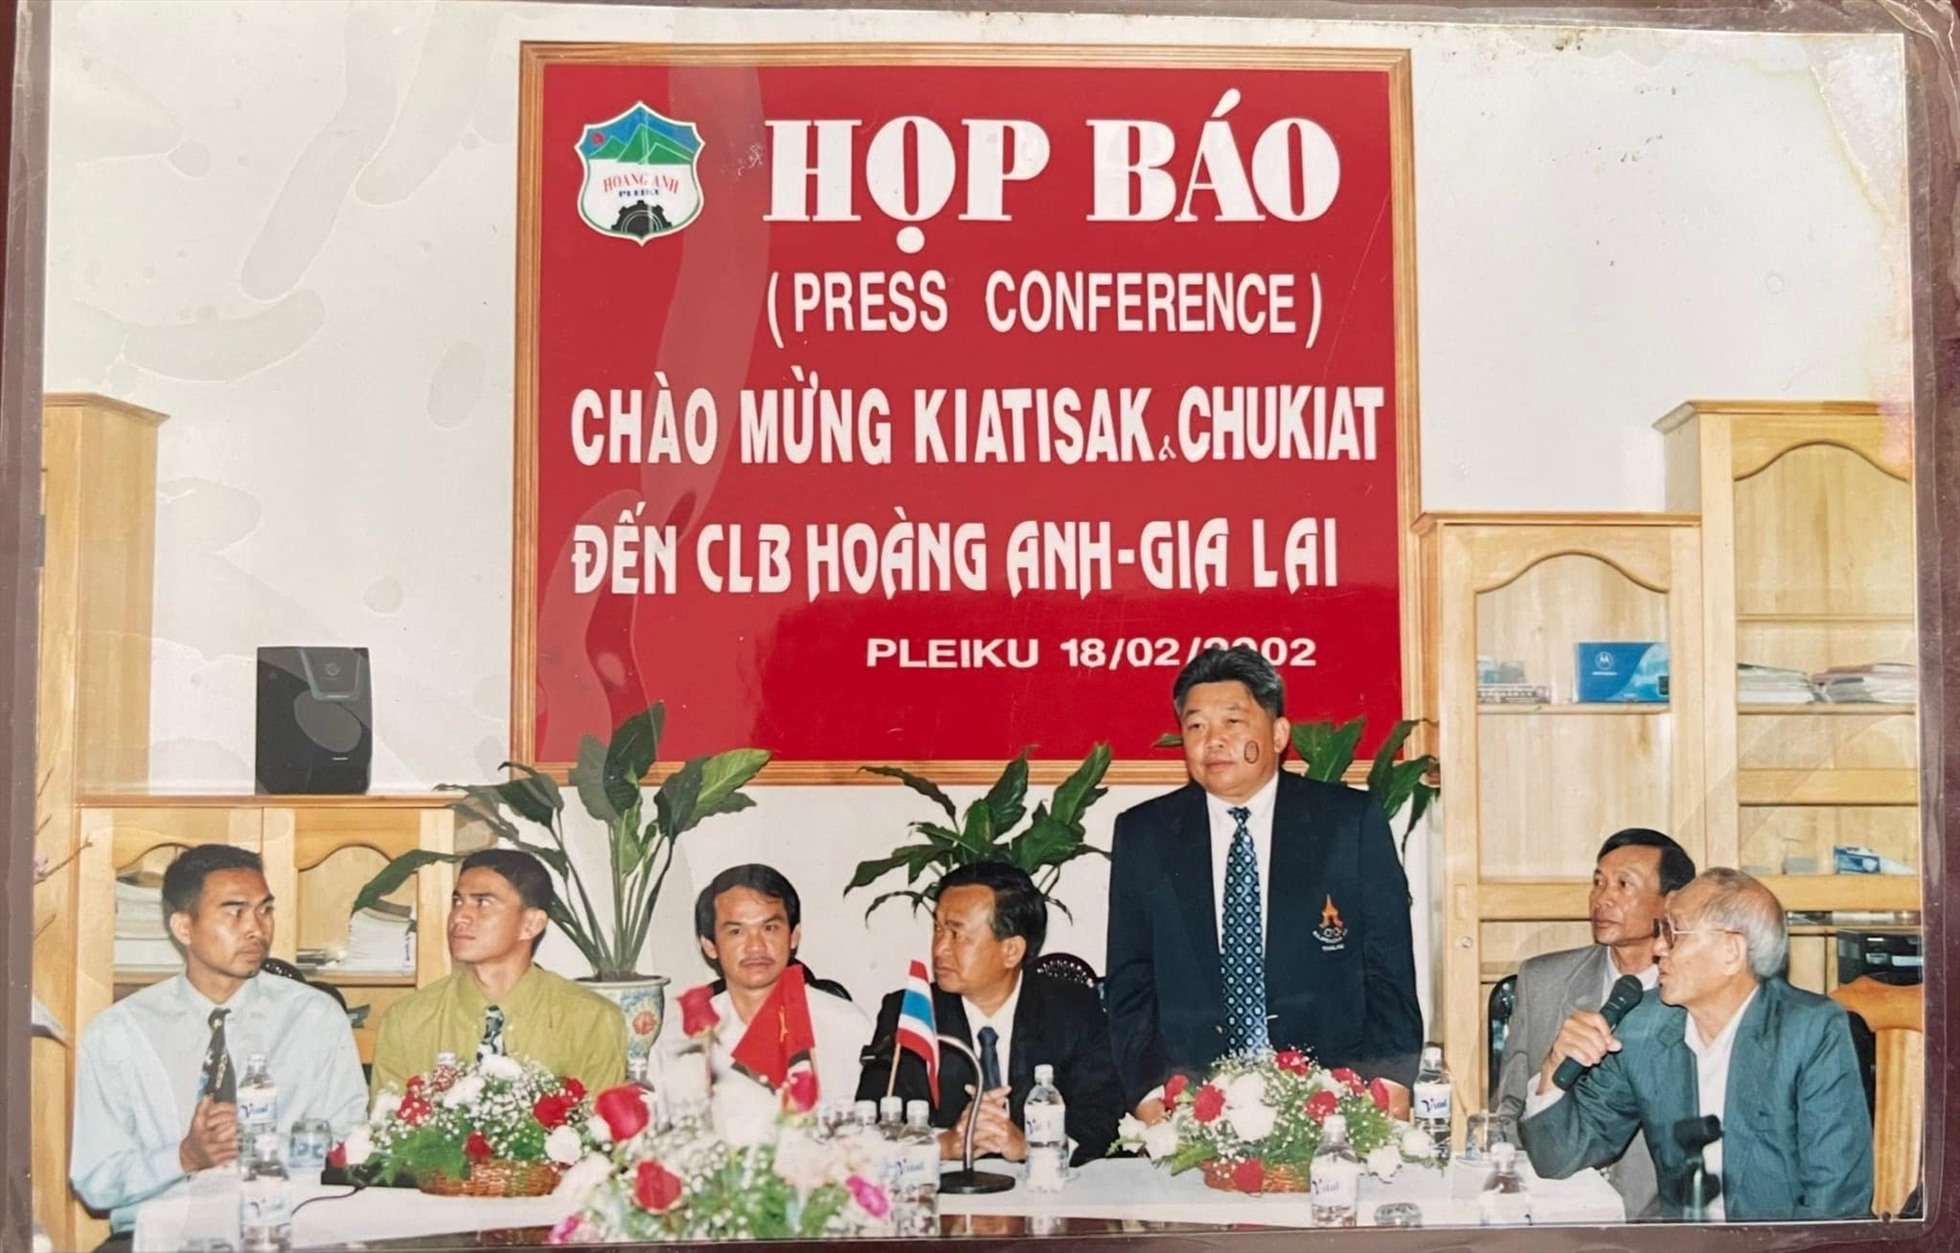 Hoàng Anh Gia Lai công bố hợp đồng với Kiatisak và Chukiat vào ngày 18.2.2002. Ảnh: CLB HAGL